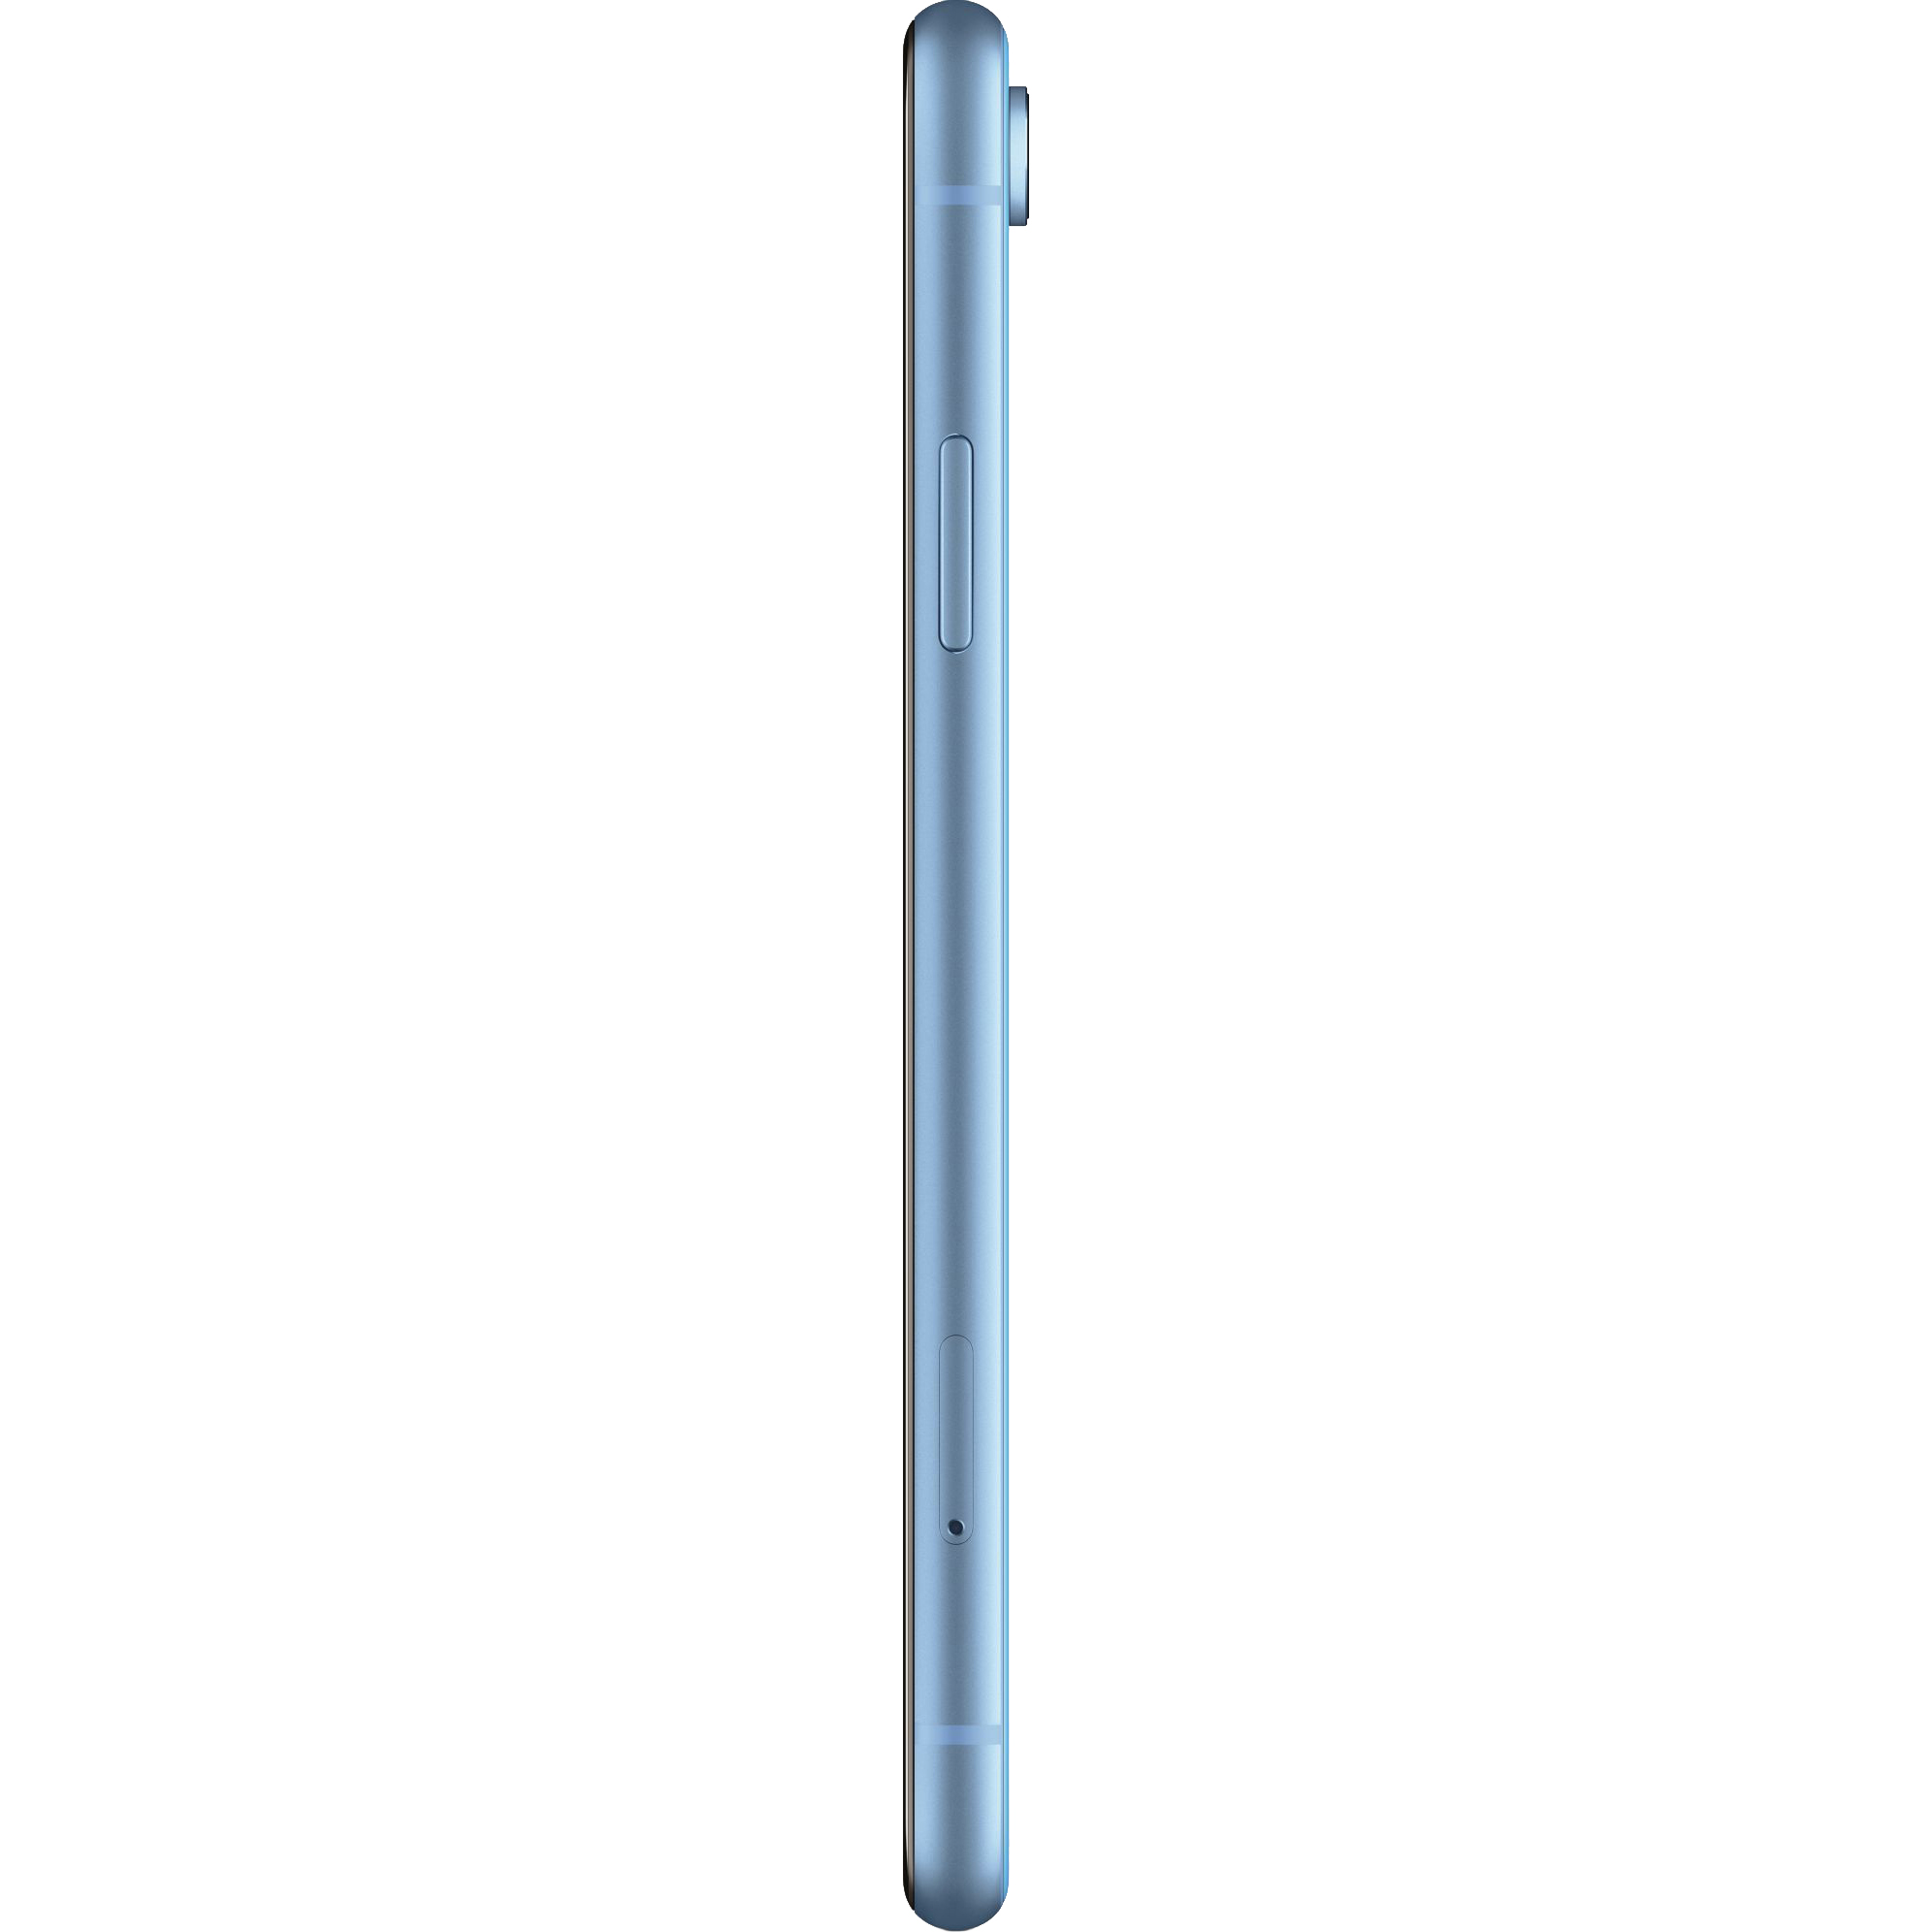 Смартфон Apple iPhone XR 64 GB синий, цвет 16,7 млн A12 Bionic - фото 2